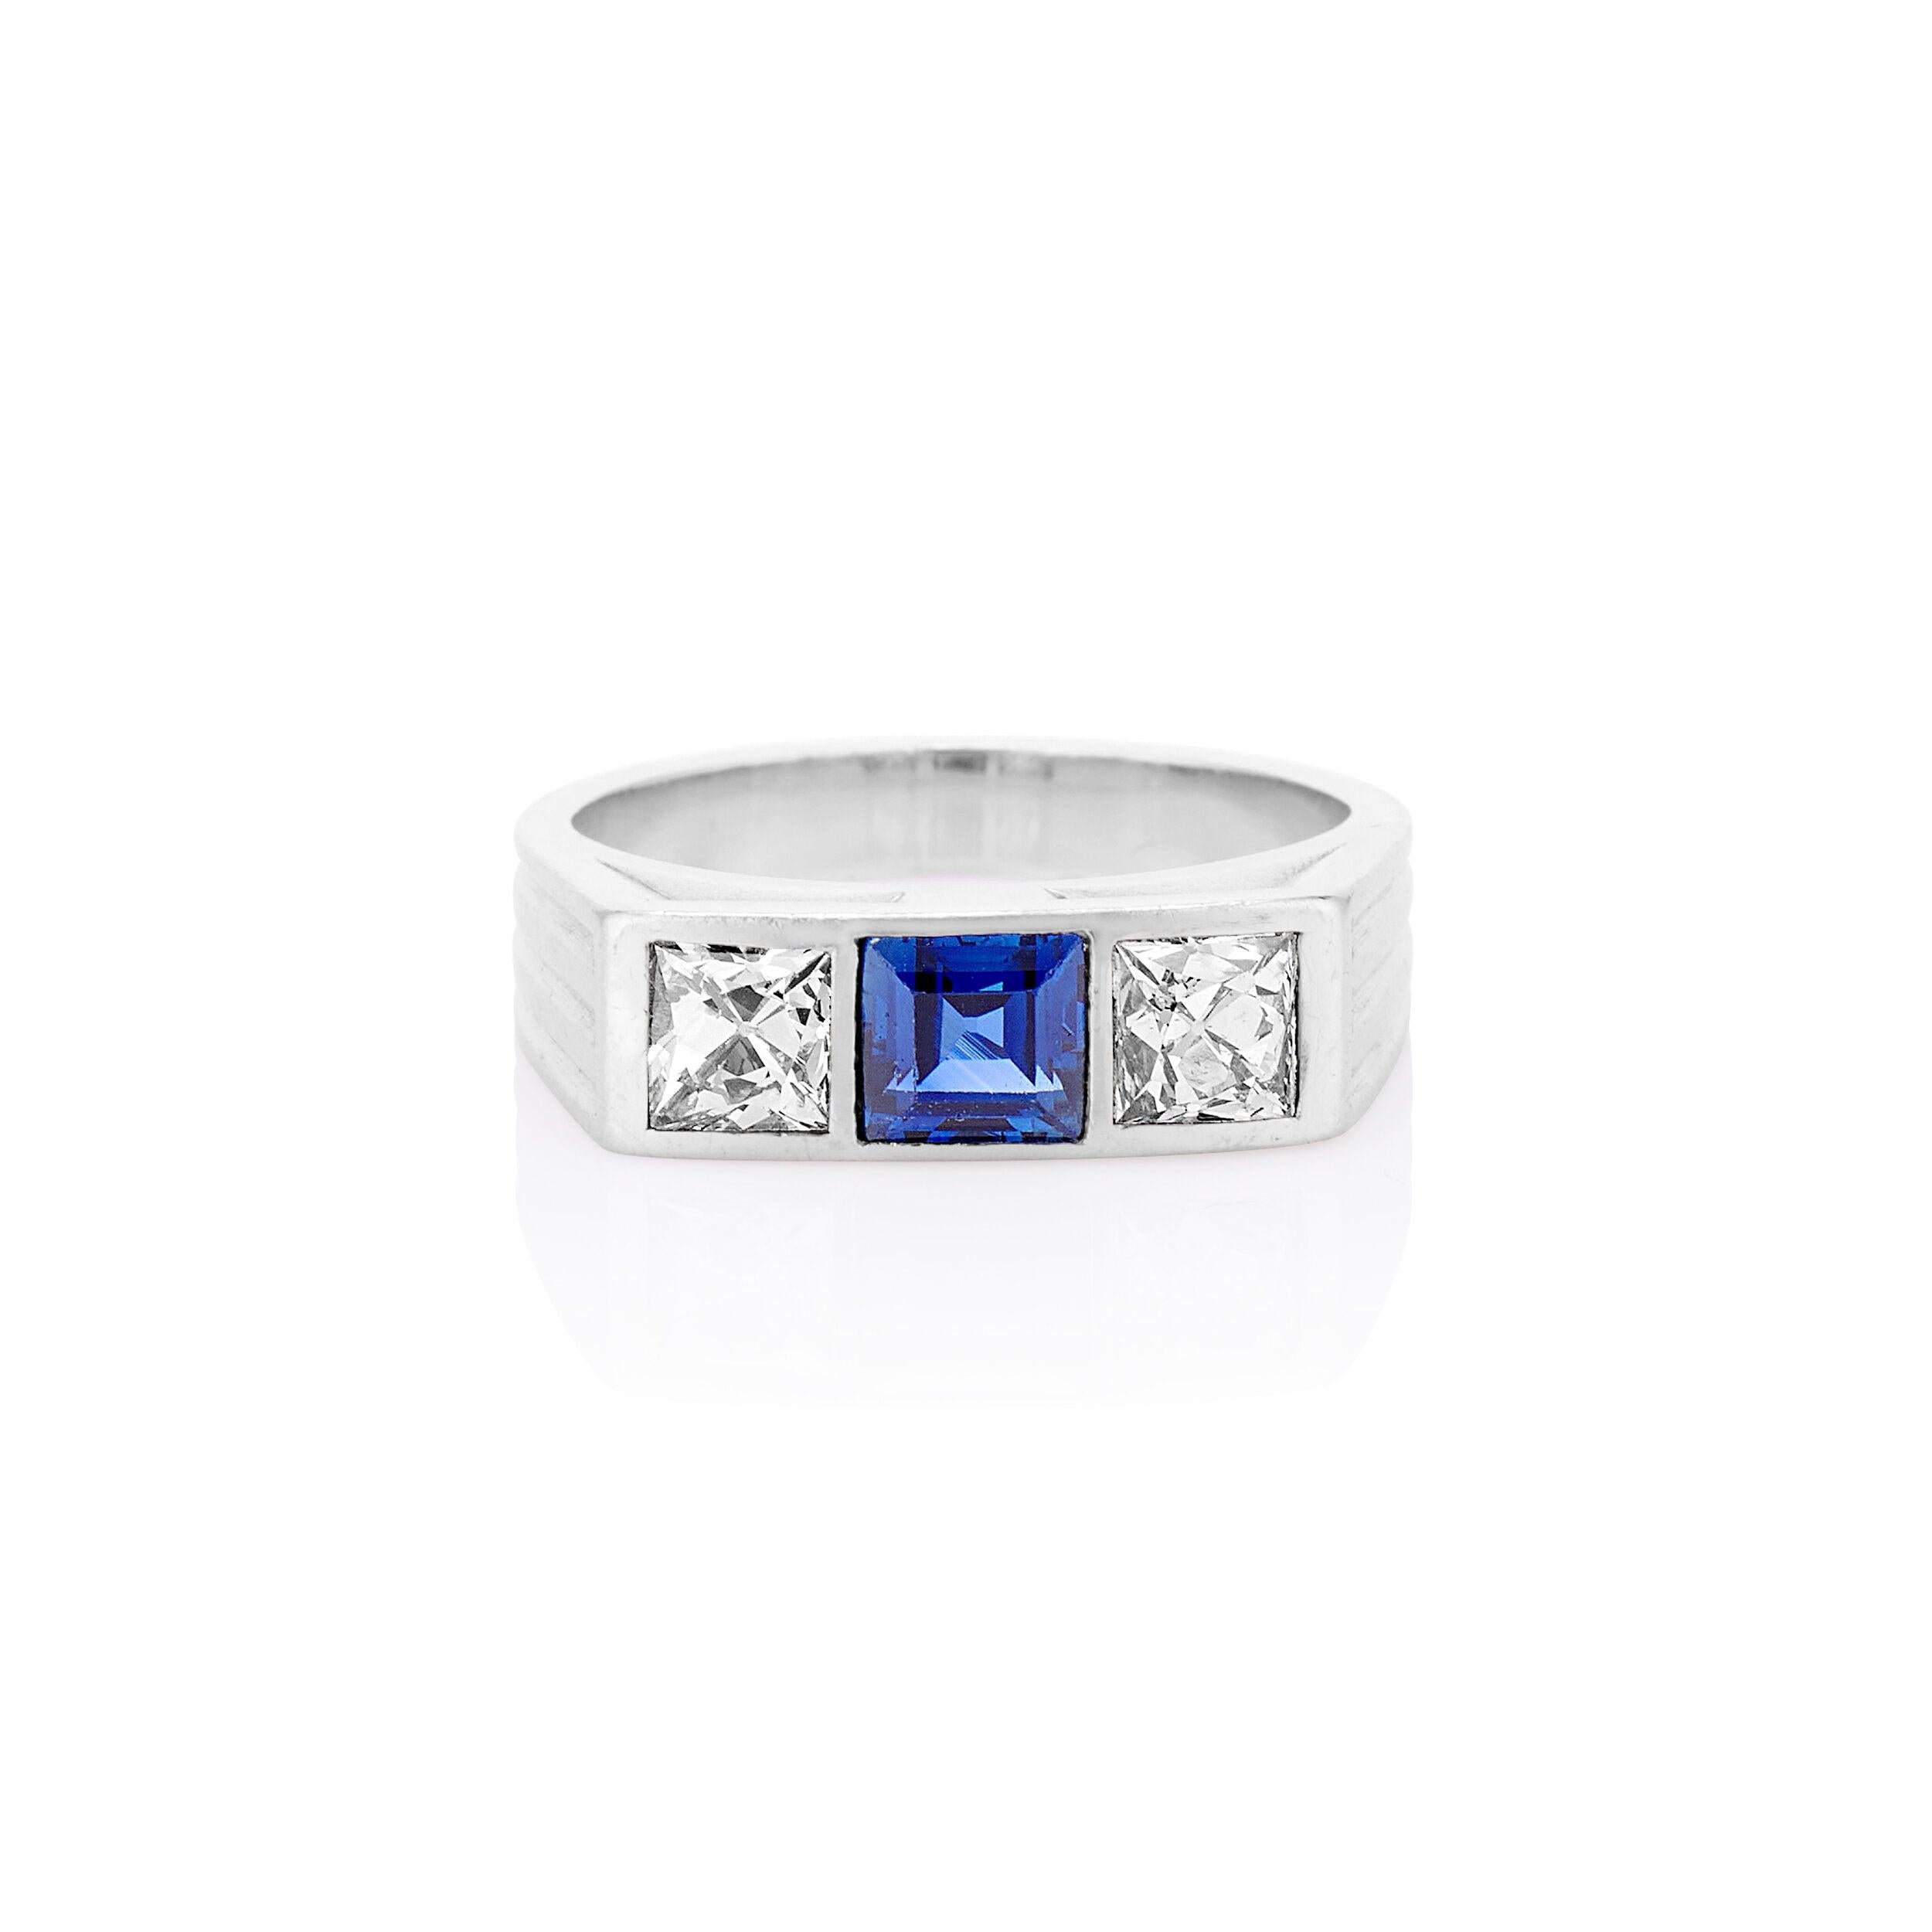 Dieser elegante und raffinierte Drei-Stein-Ring aus den 1930er Jahren ist aus Platin gefertigt. Im Mittelpunkt dieses Rings steht ein strahlend blauer Saphir, der zwischen zwei strahlend weißen Diamanten im französischen Schliff liegt. Absolut